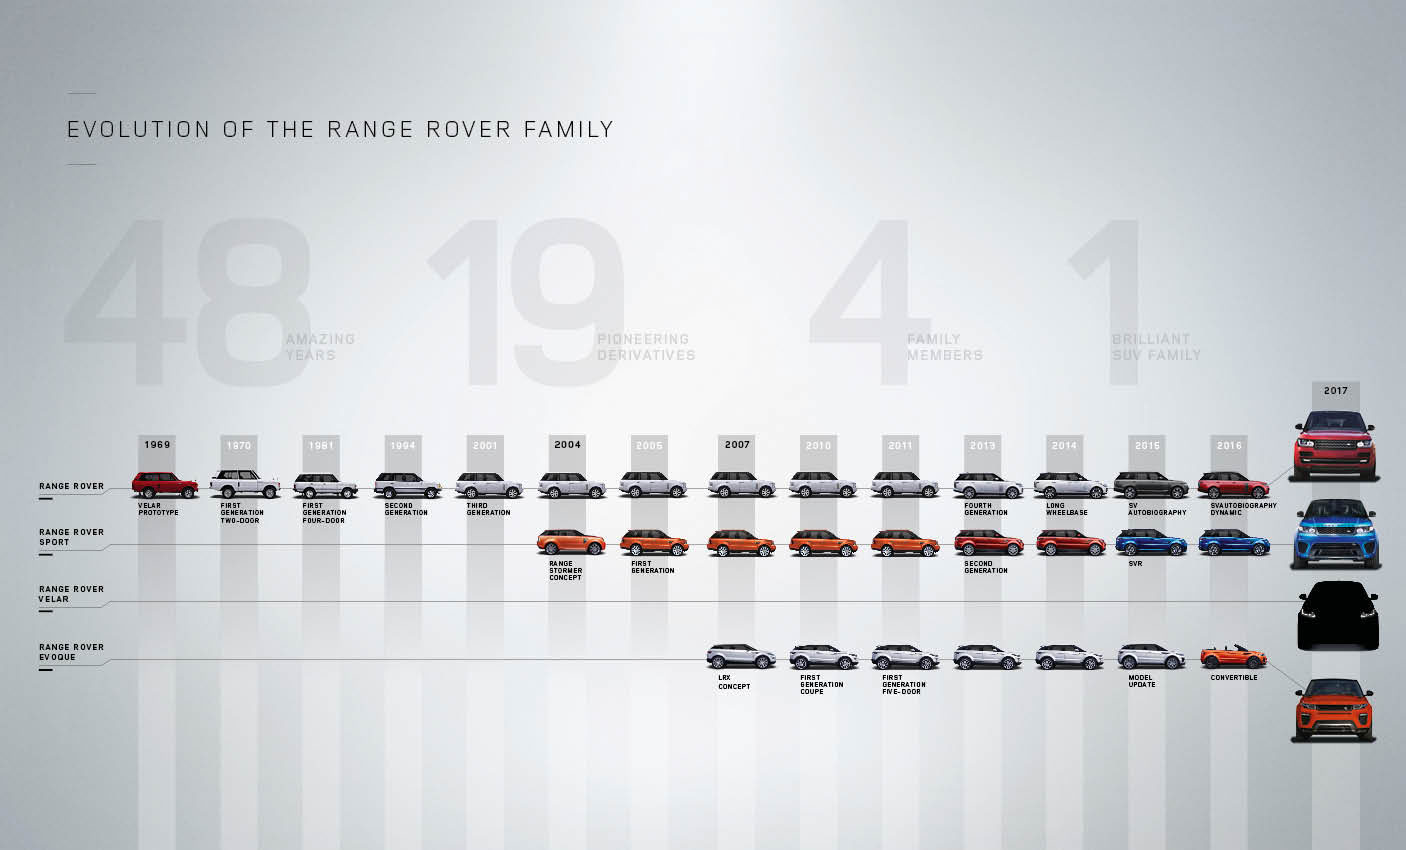 Range-Rover-Velar-Tease-Image_Evolution-of-the-Range-Rover-Family.jpg